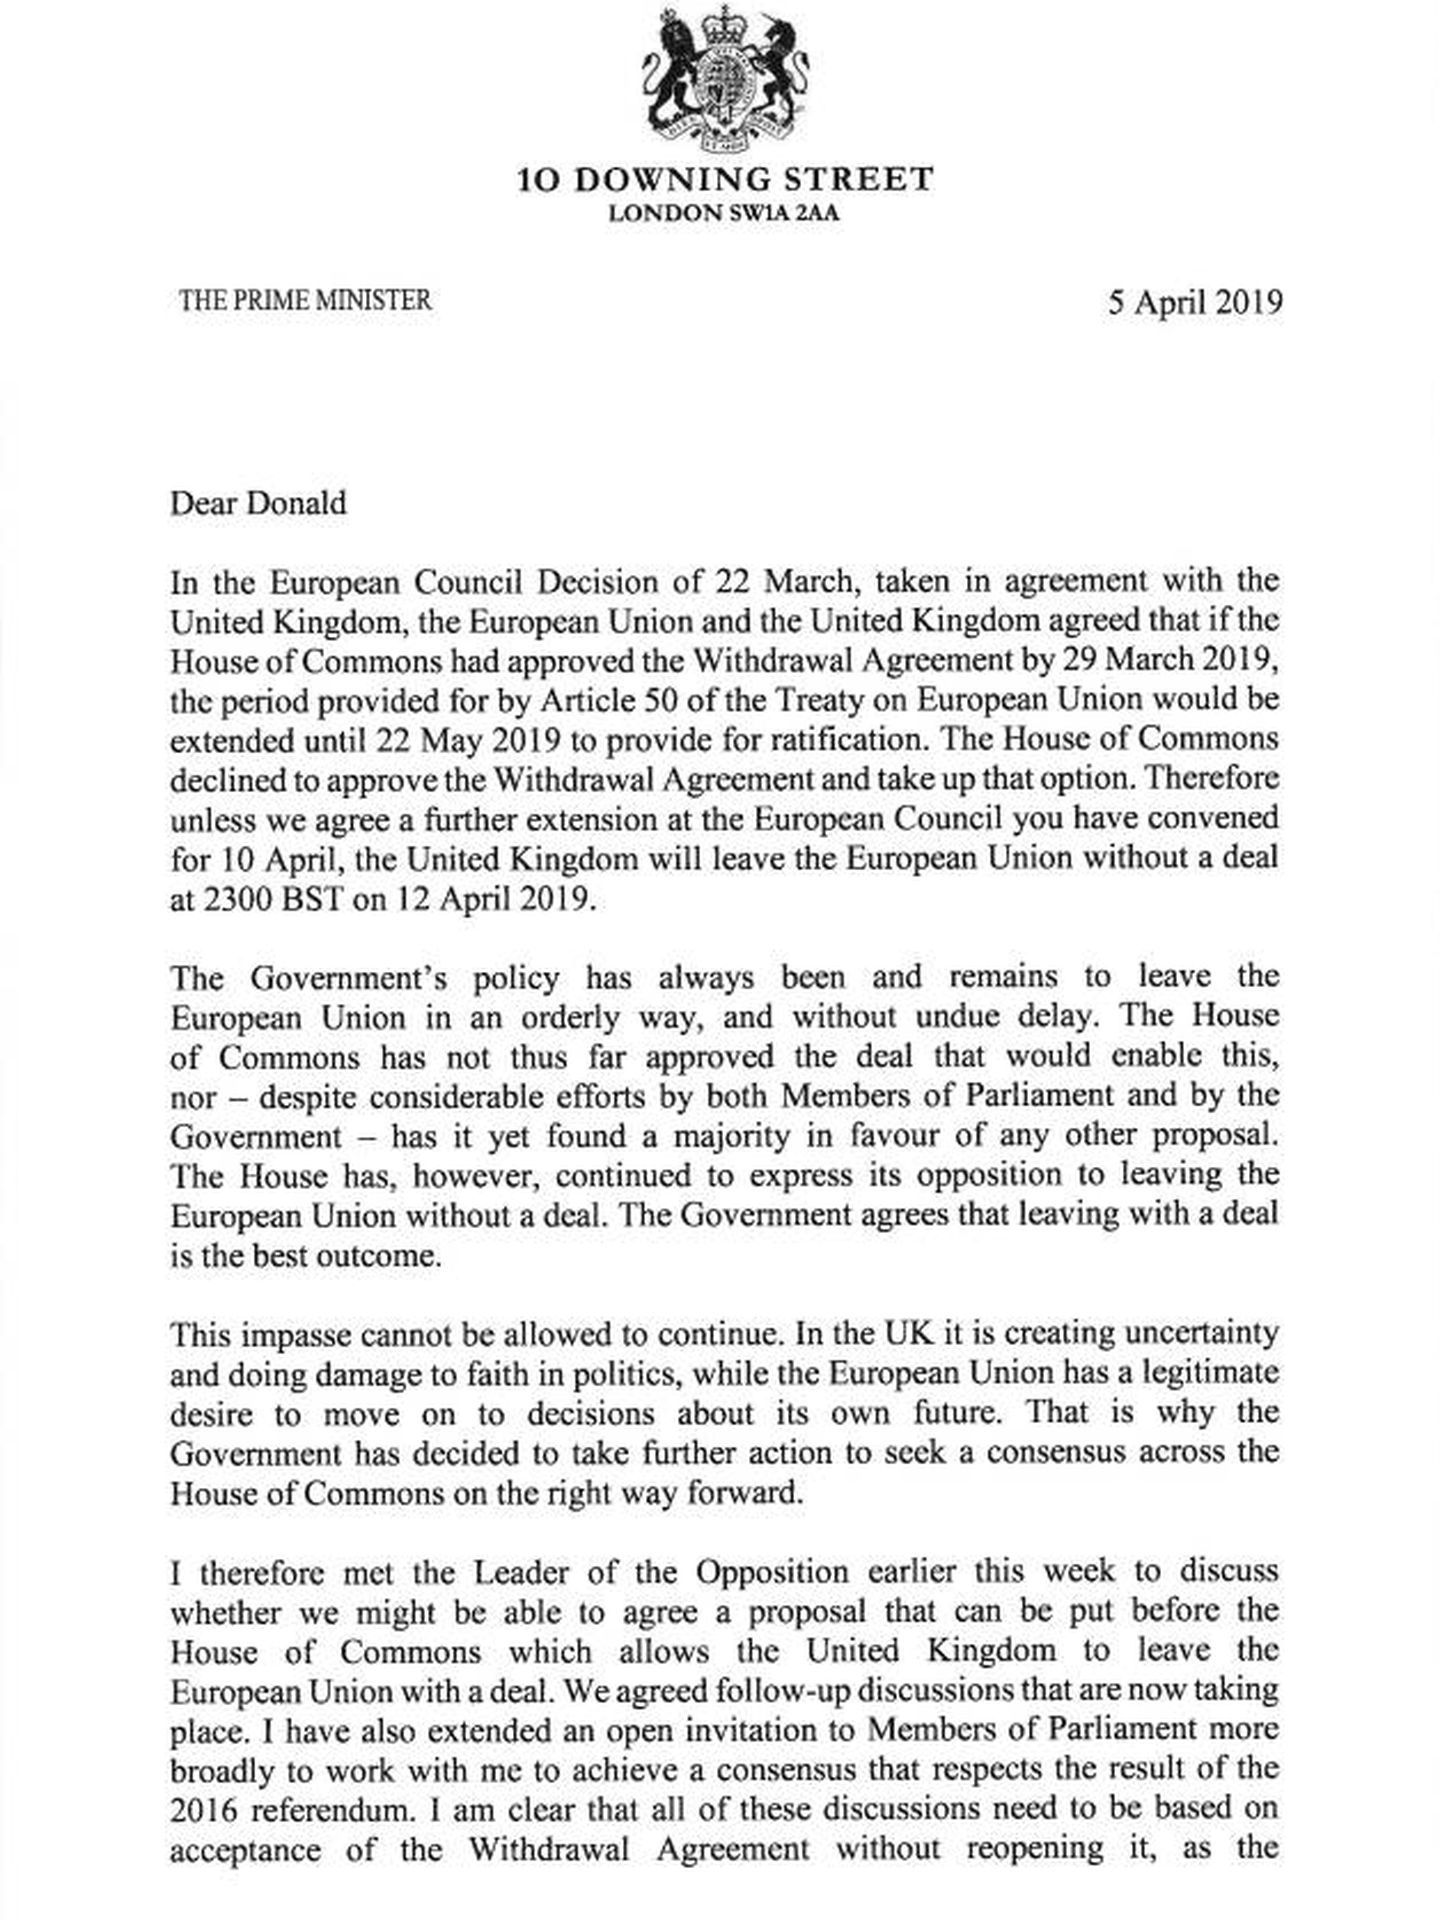 Pinche aquí para leer la carta en inglés de Theresa May a Donald Tusk